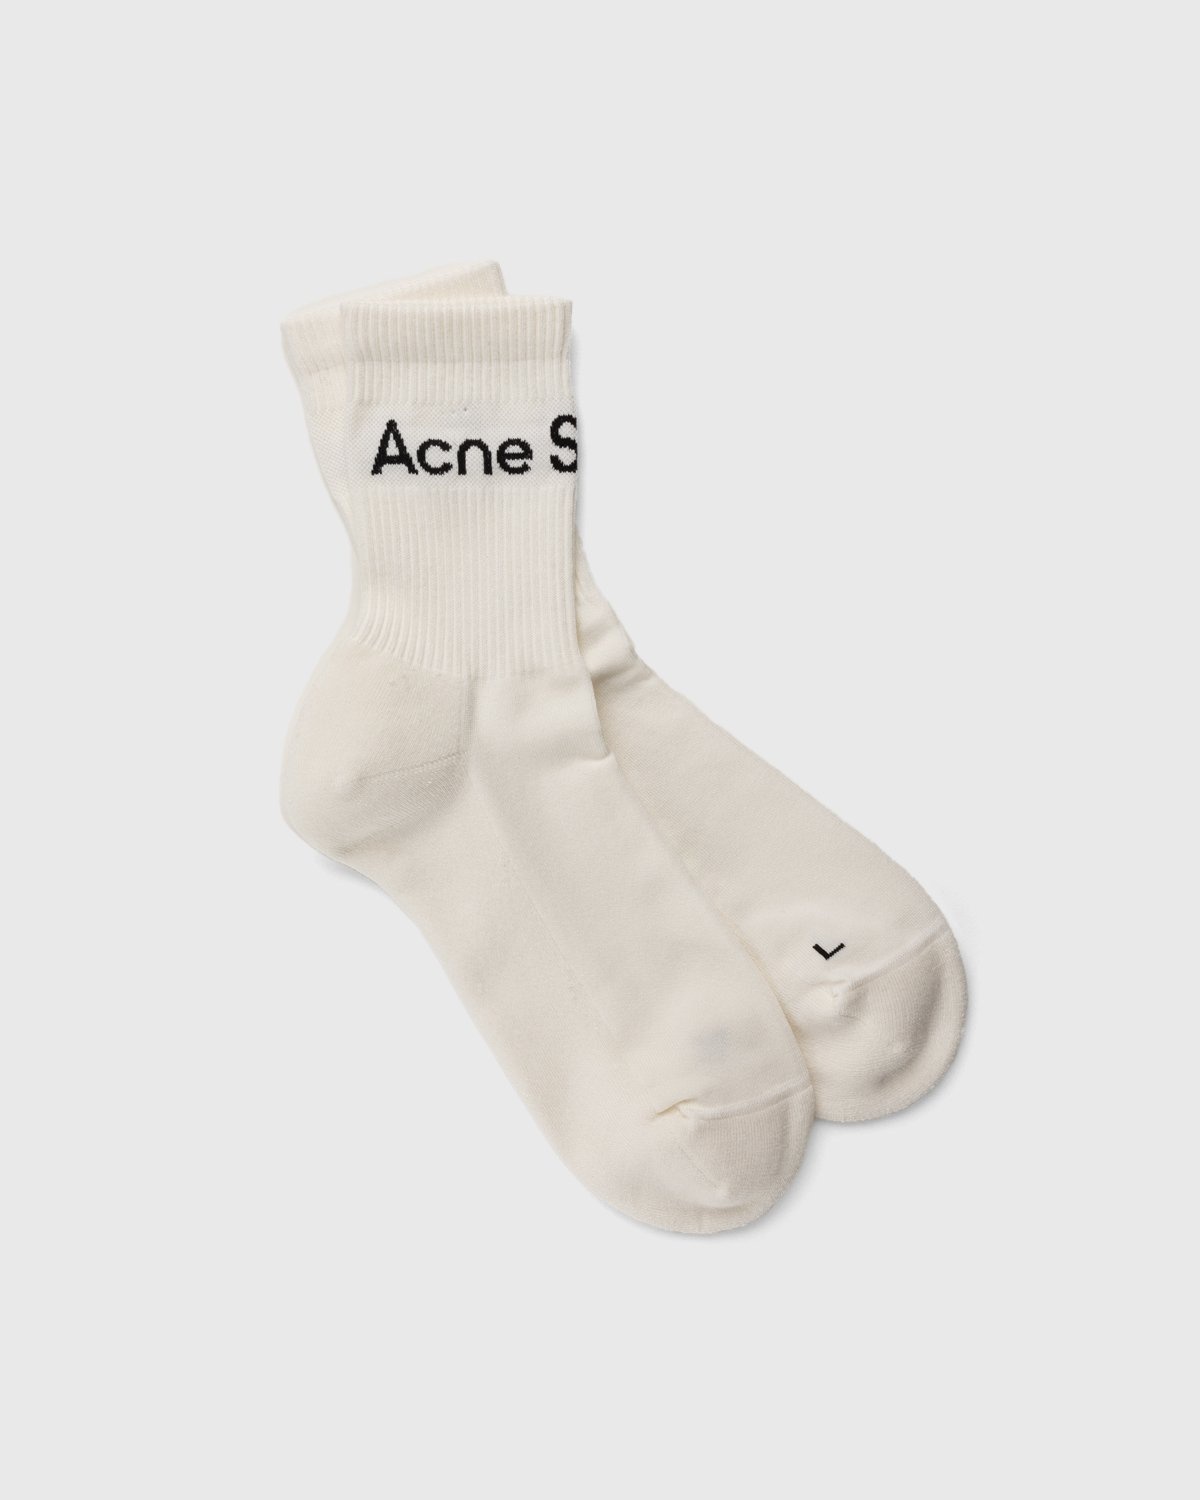 Acne Studios – Ribbed Logo Socks Black/white - Crew - White - Image 1